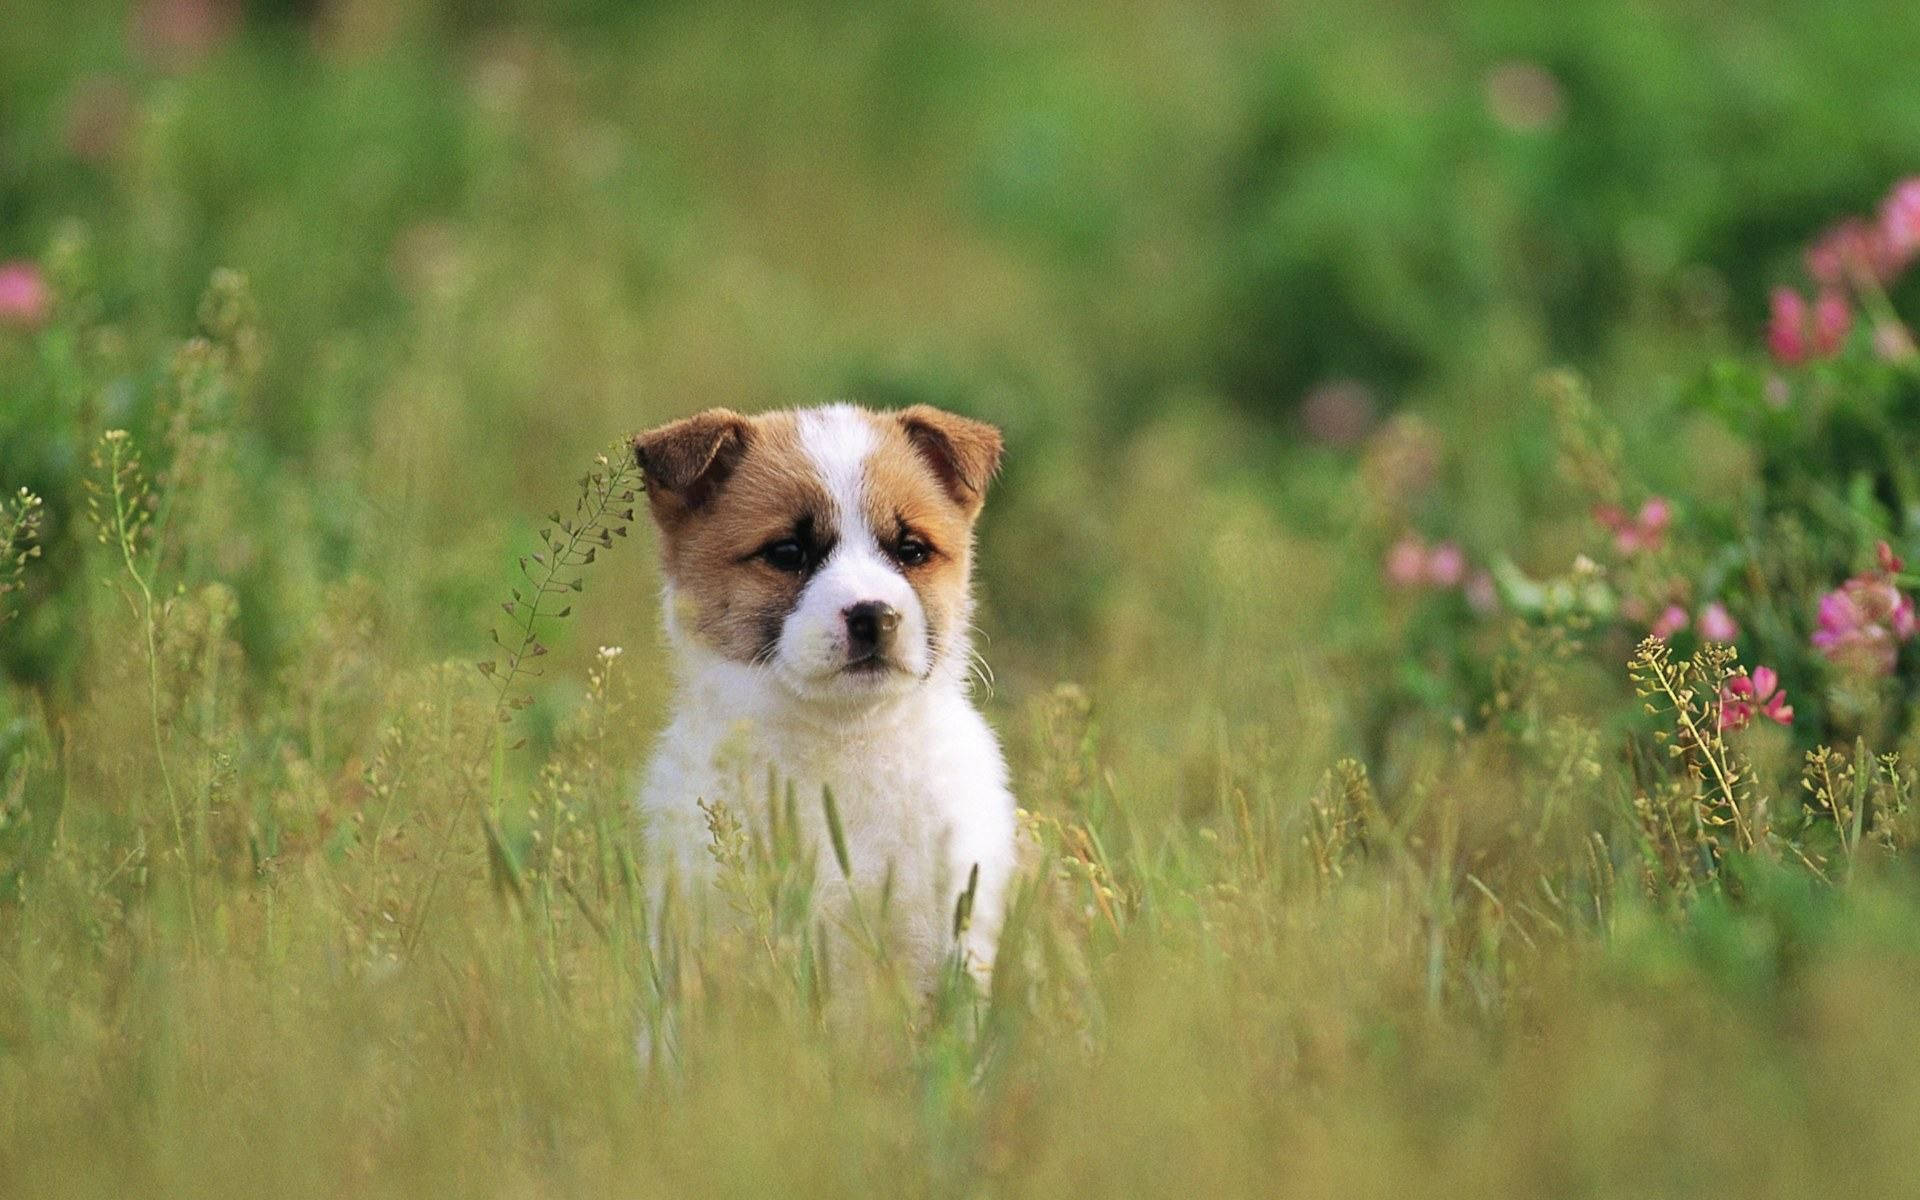 Sheepdog Puppy Dog In Grass Field Background